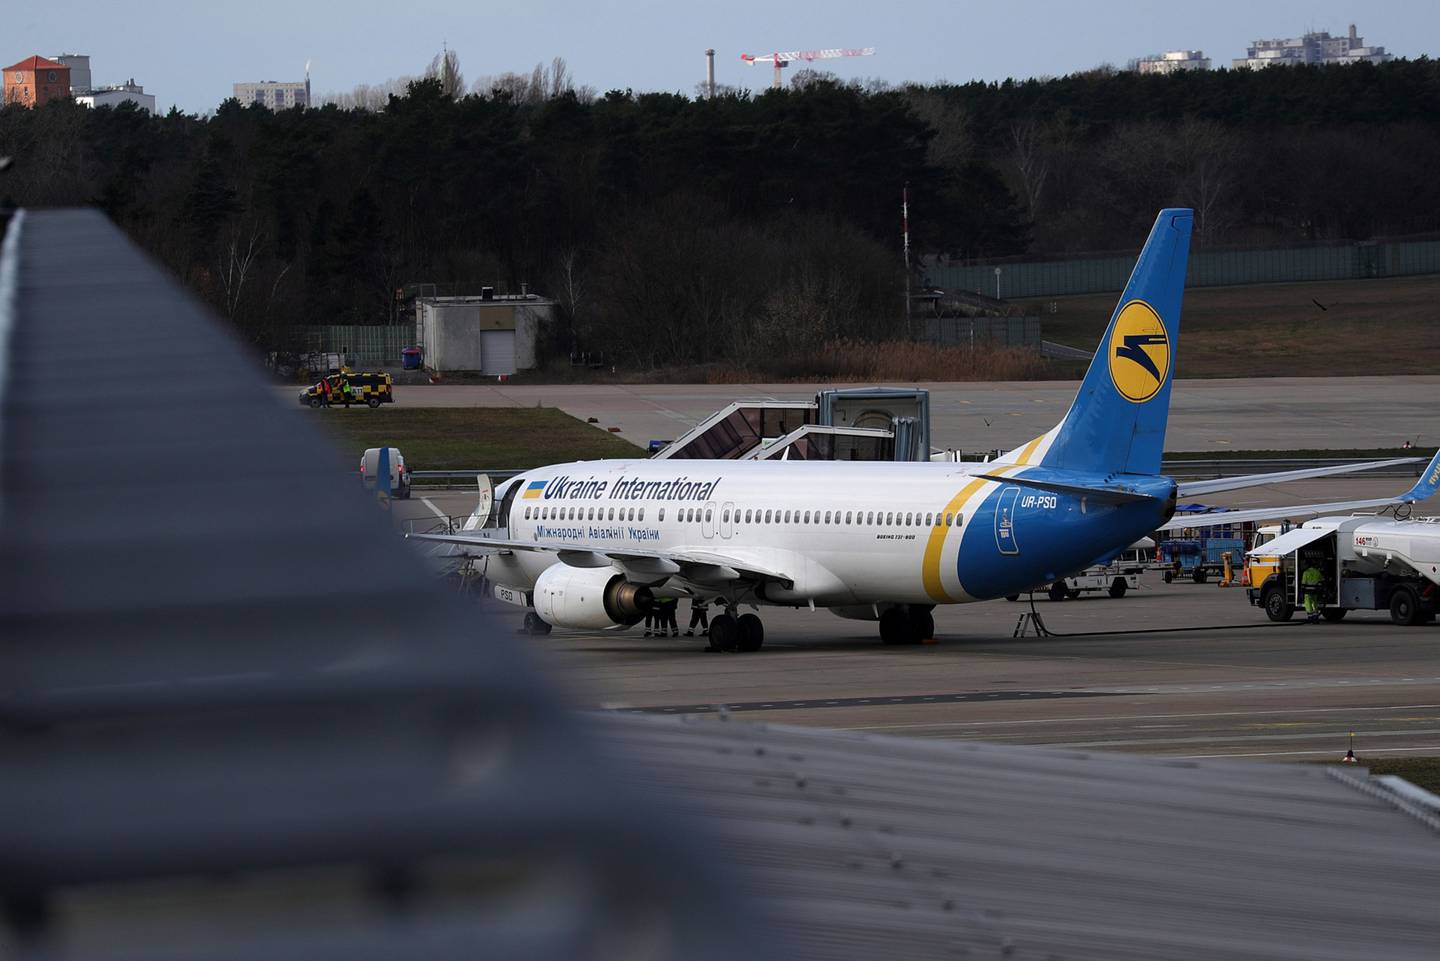 Un avión de pasajeros Boeing 737-800, operado por Ukraine International Airlines, se encuentra en la pista del aeropuerto de Tegel en Berlín.dfd